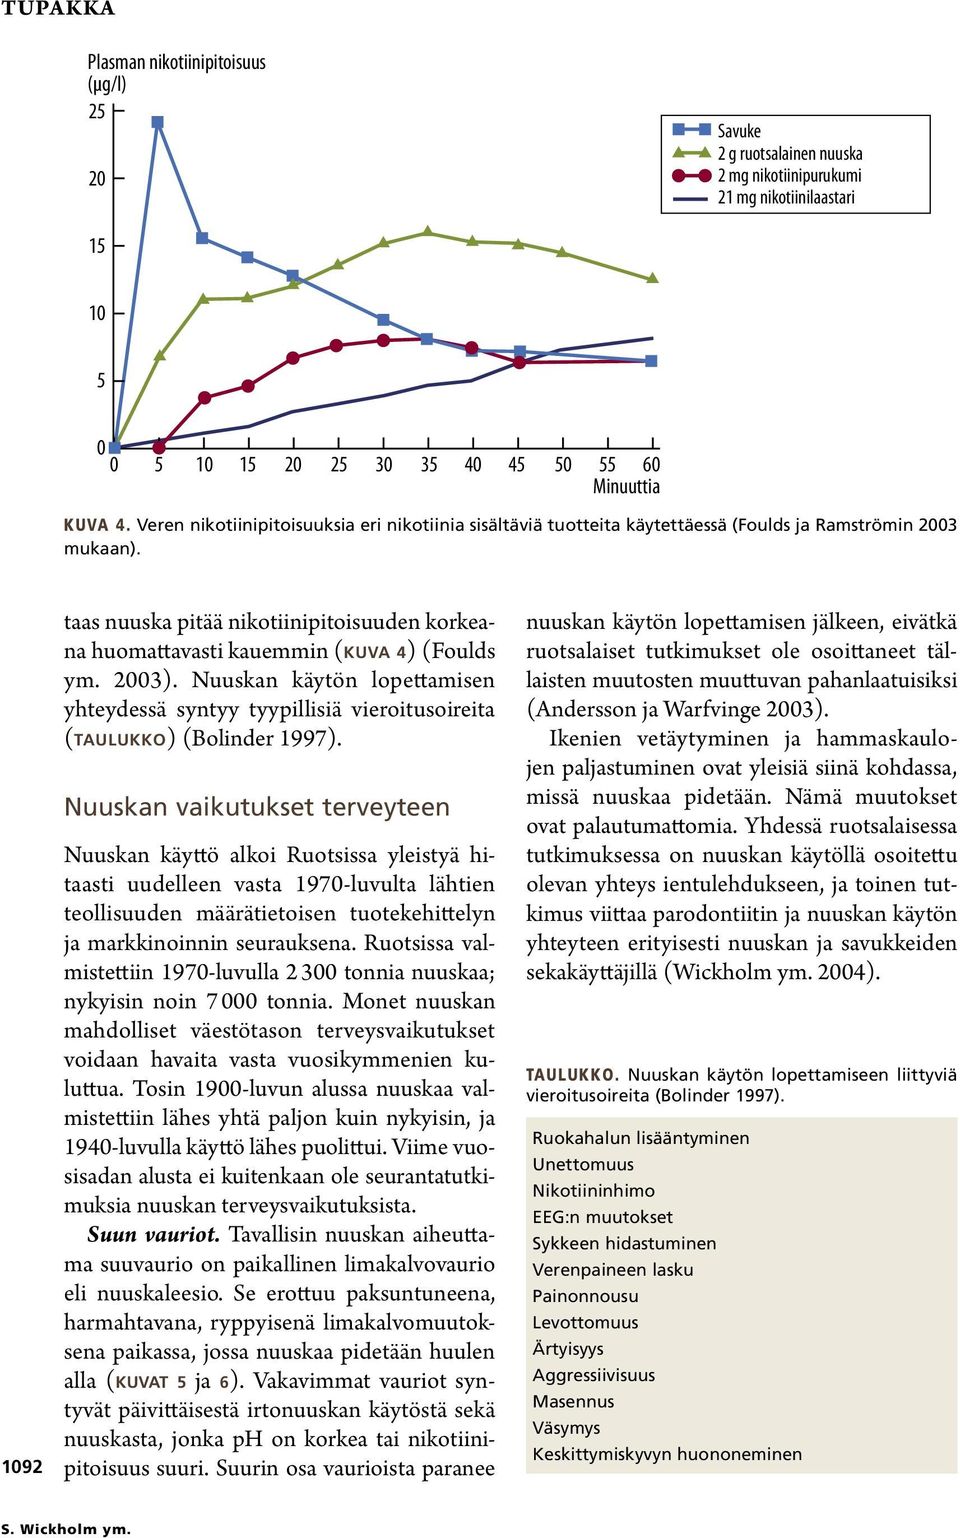 1092 taas nuuska pitää nikotiinipitoisuuden korkeana huomattavasti kauemmin (kuva 4) (Foulds ym. 2003).